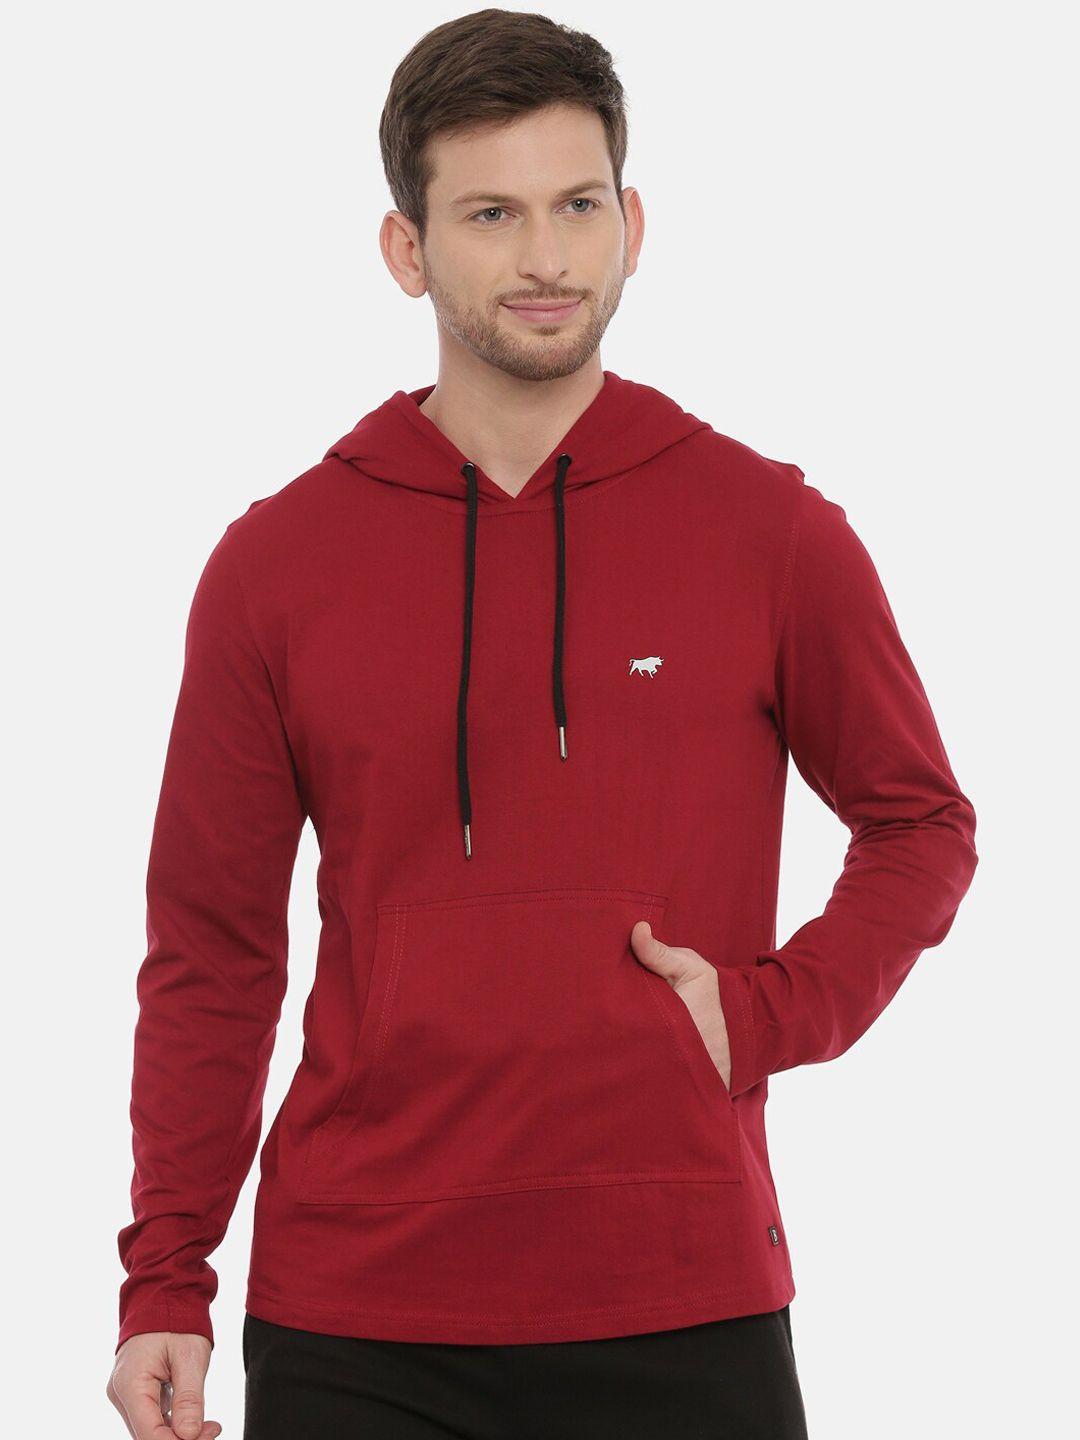 bushirt men red solid hood t-shirt